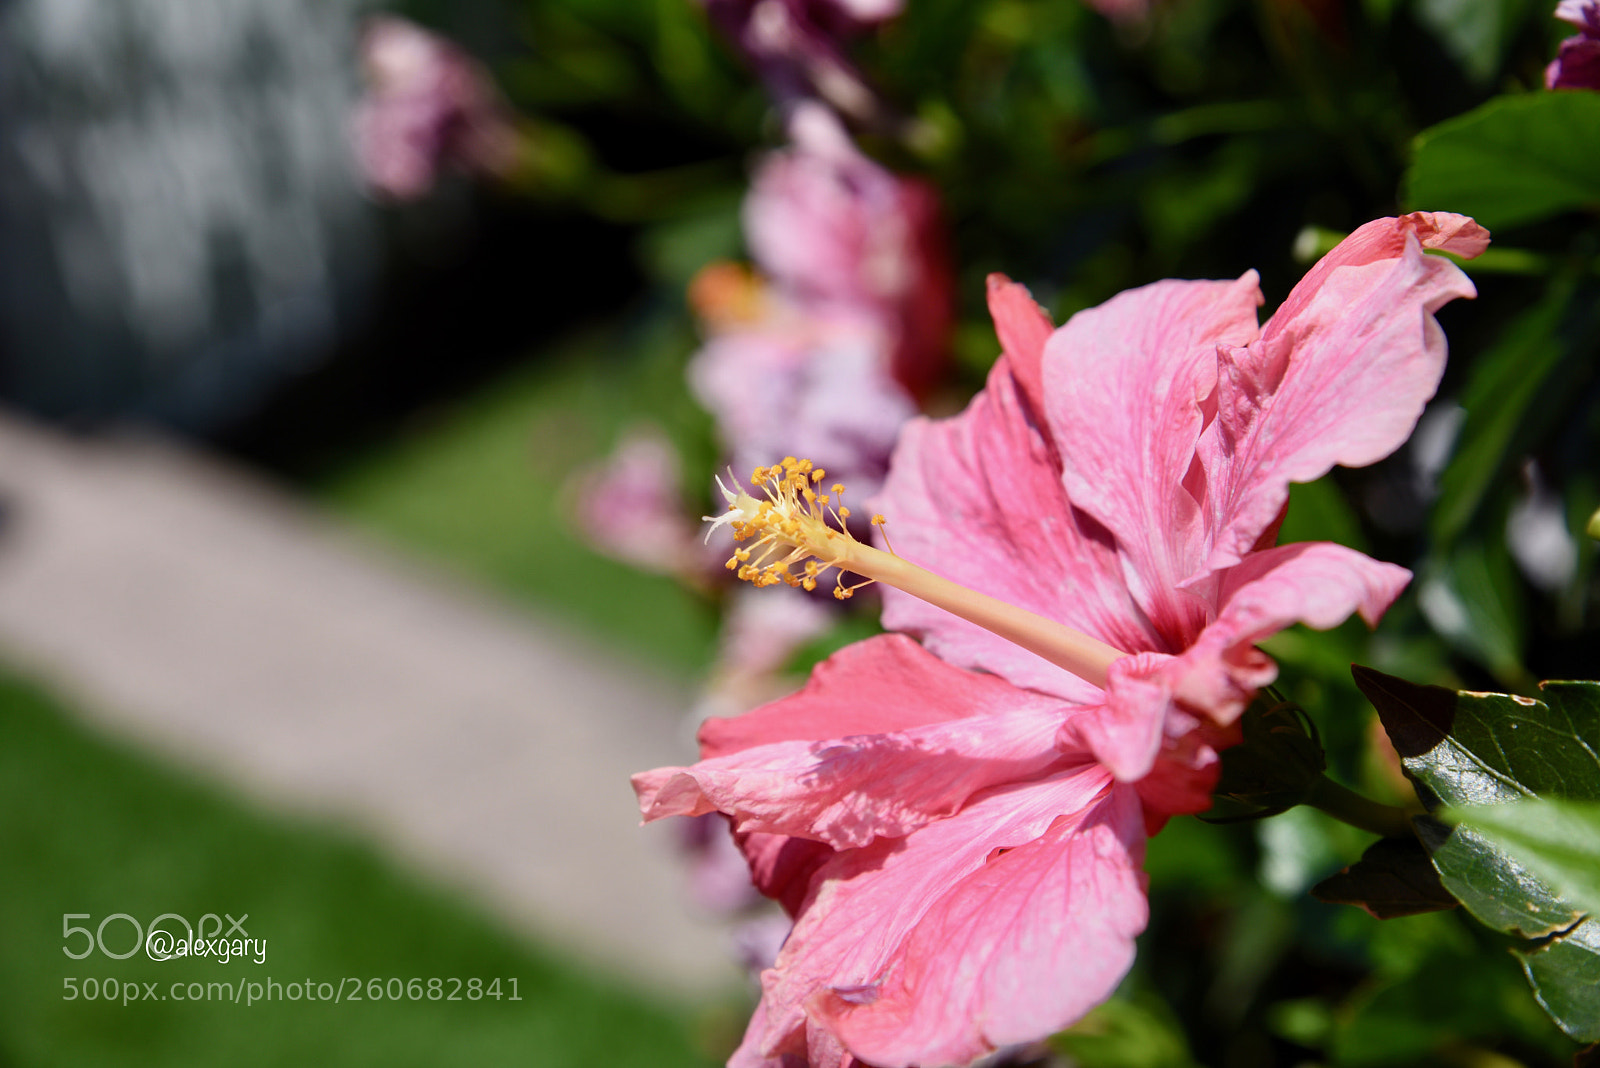 Nikon D810 sample photo. Pink hibiscus photography